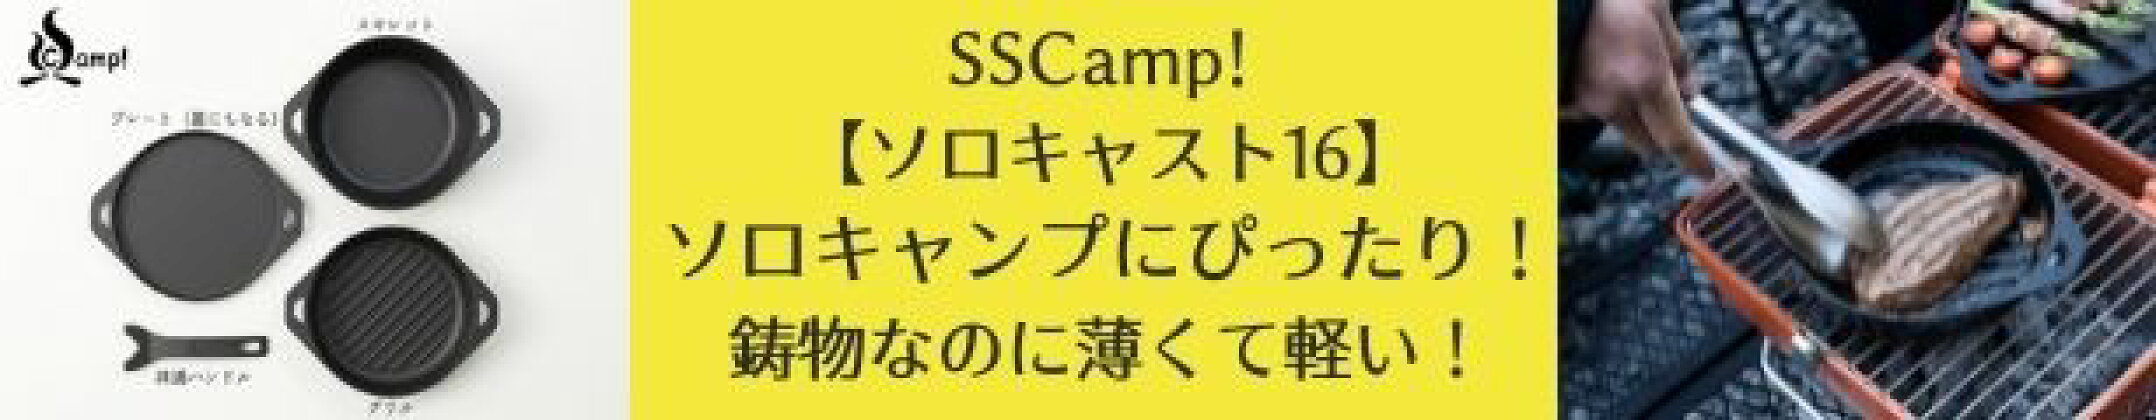 SSCamp!ソロキャスト16